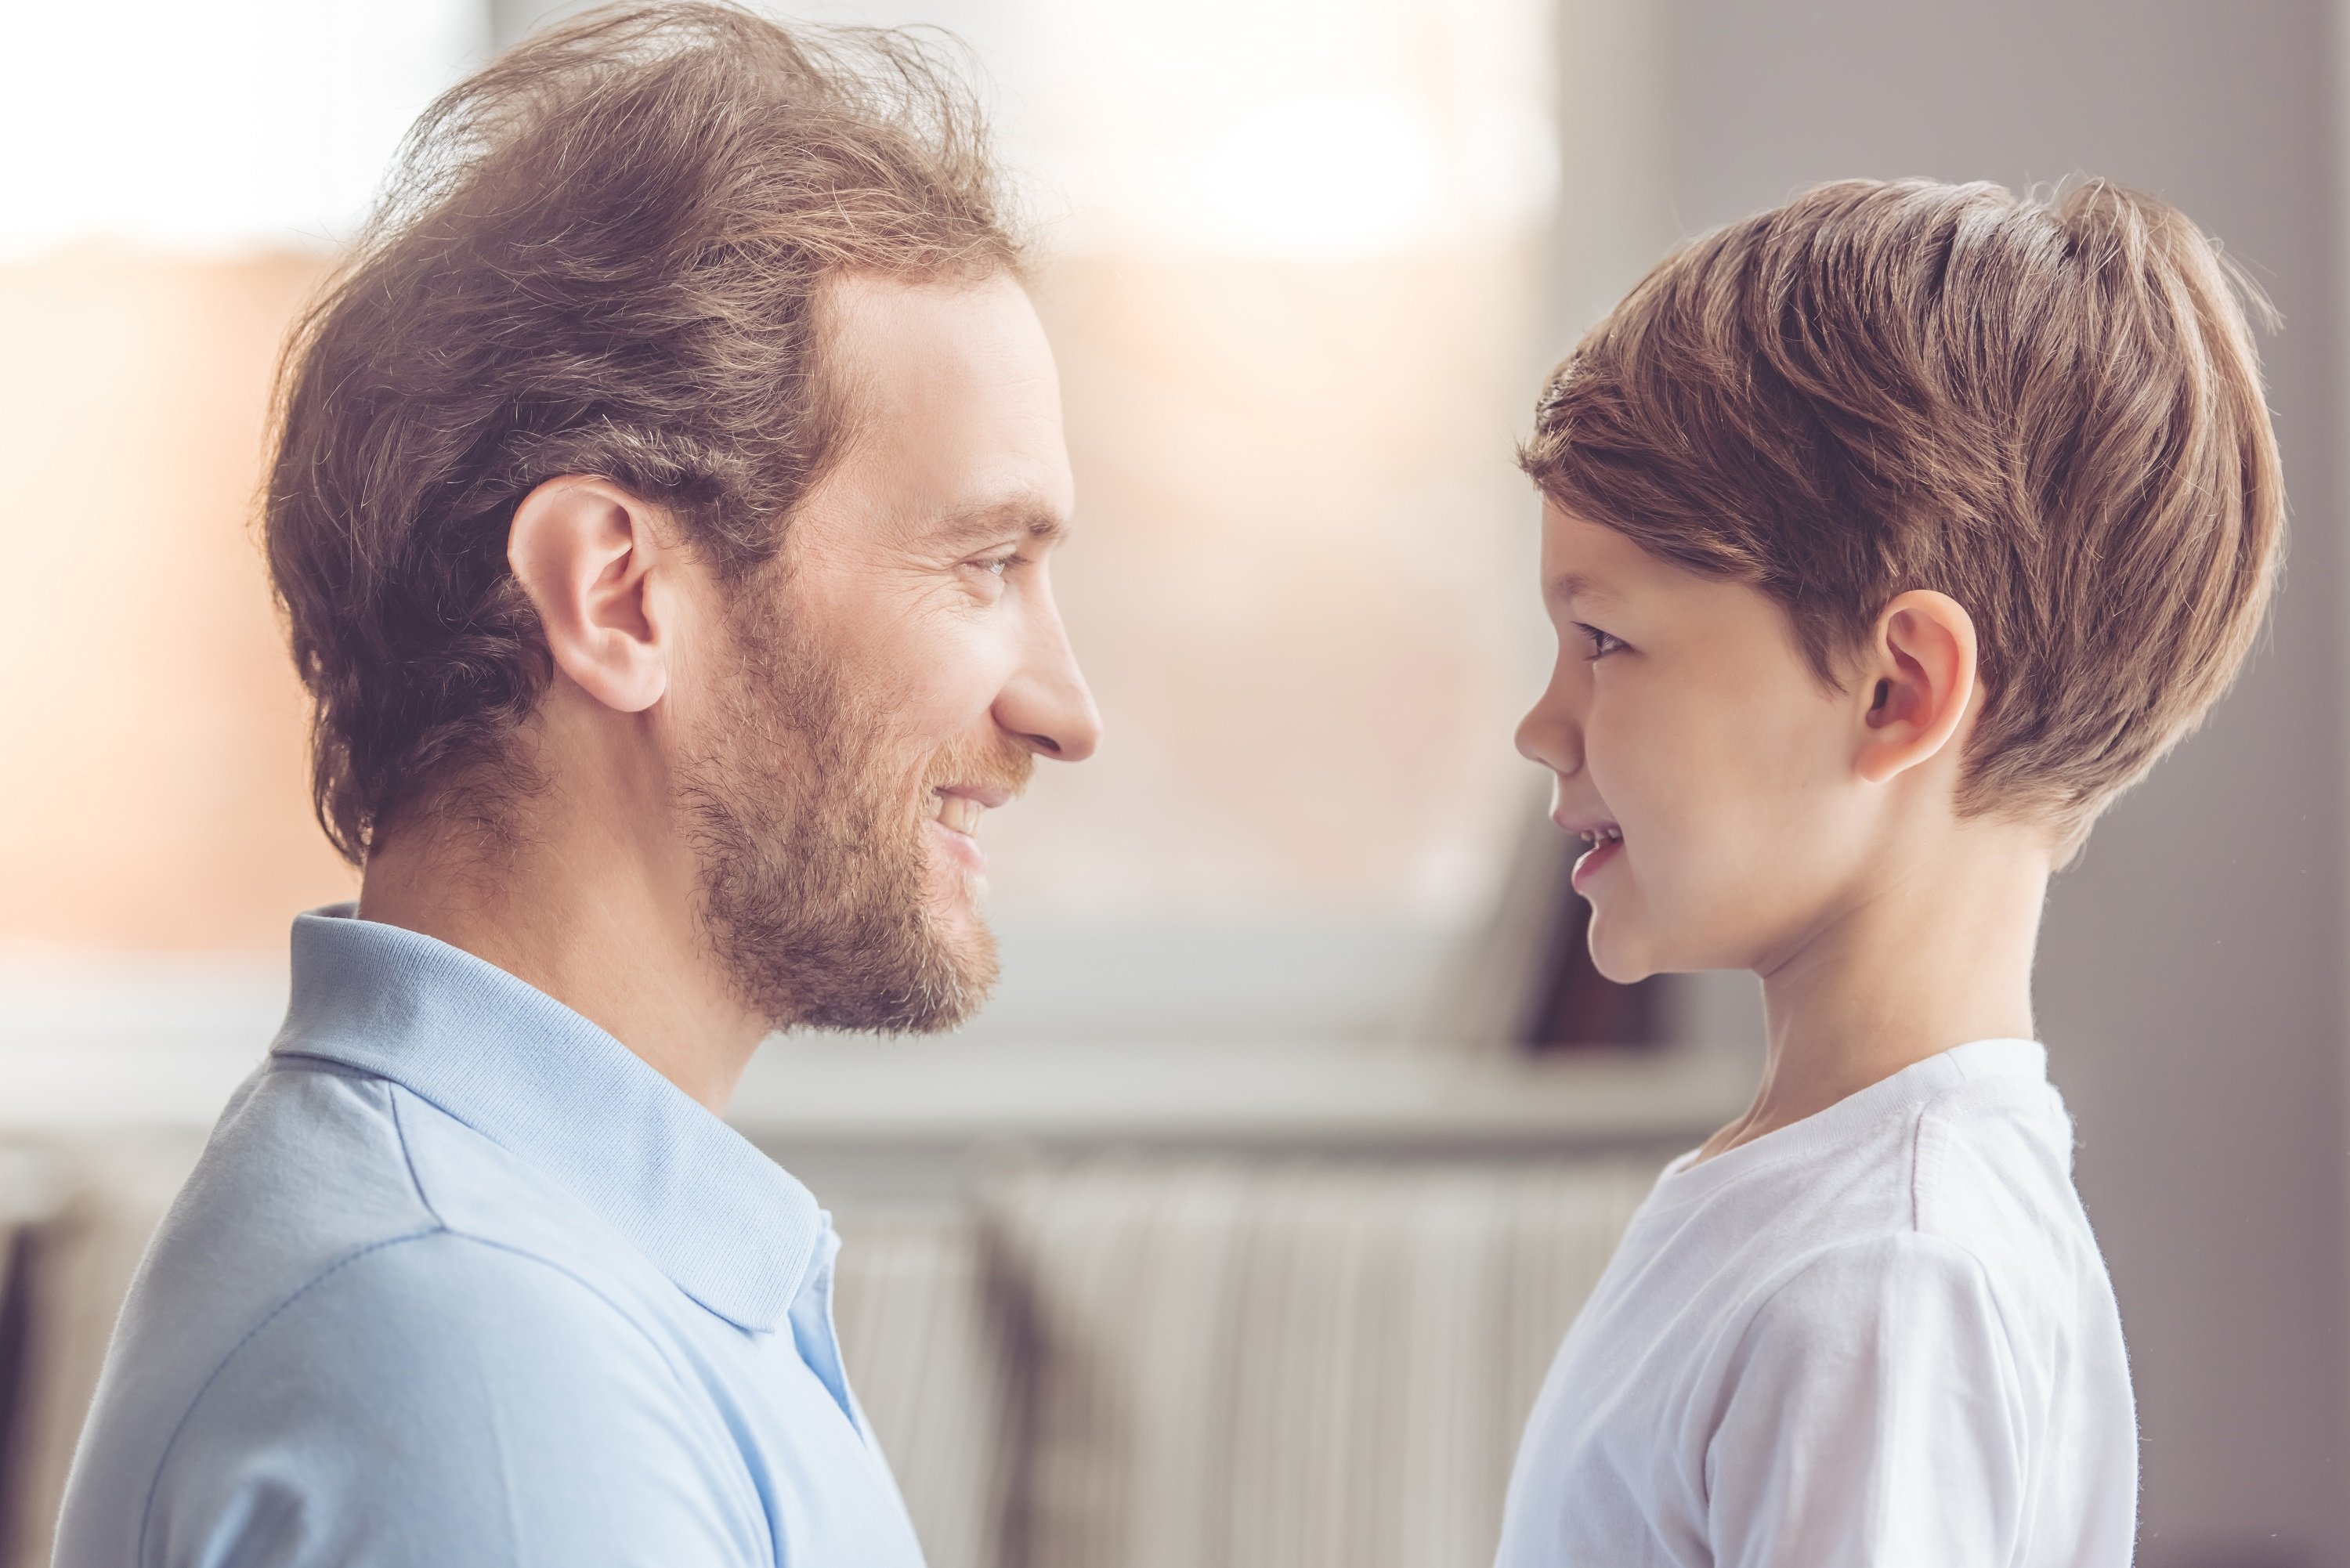 Padre e hijo compartiendo. | Foto: Shutterstock